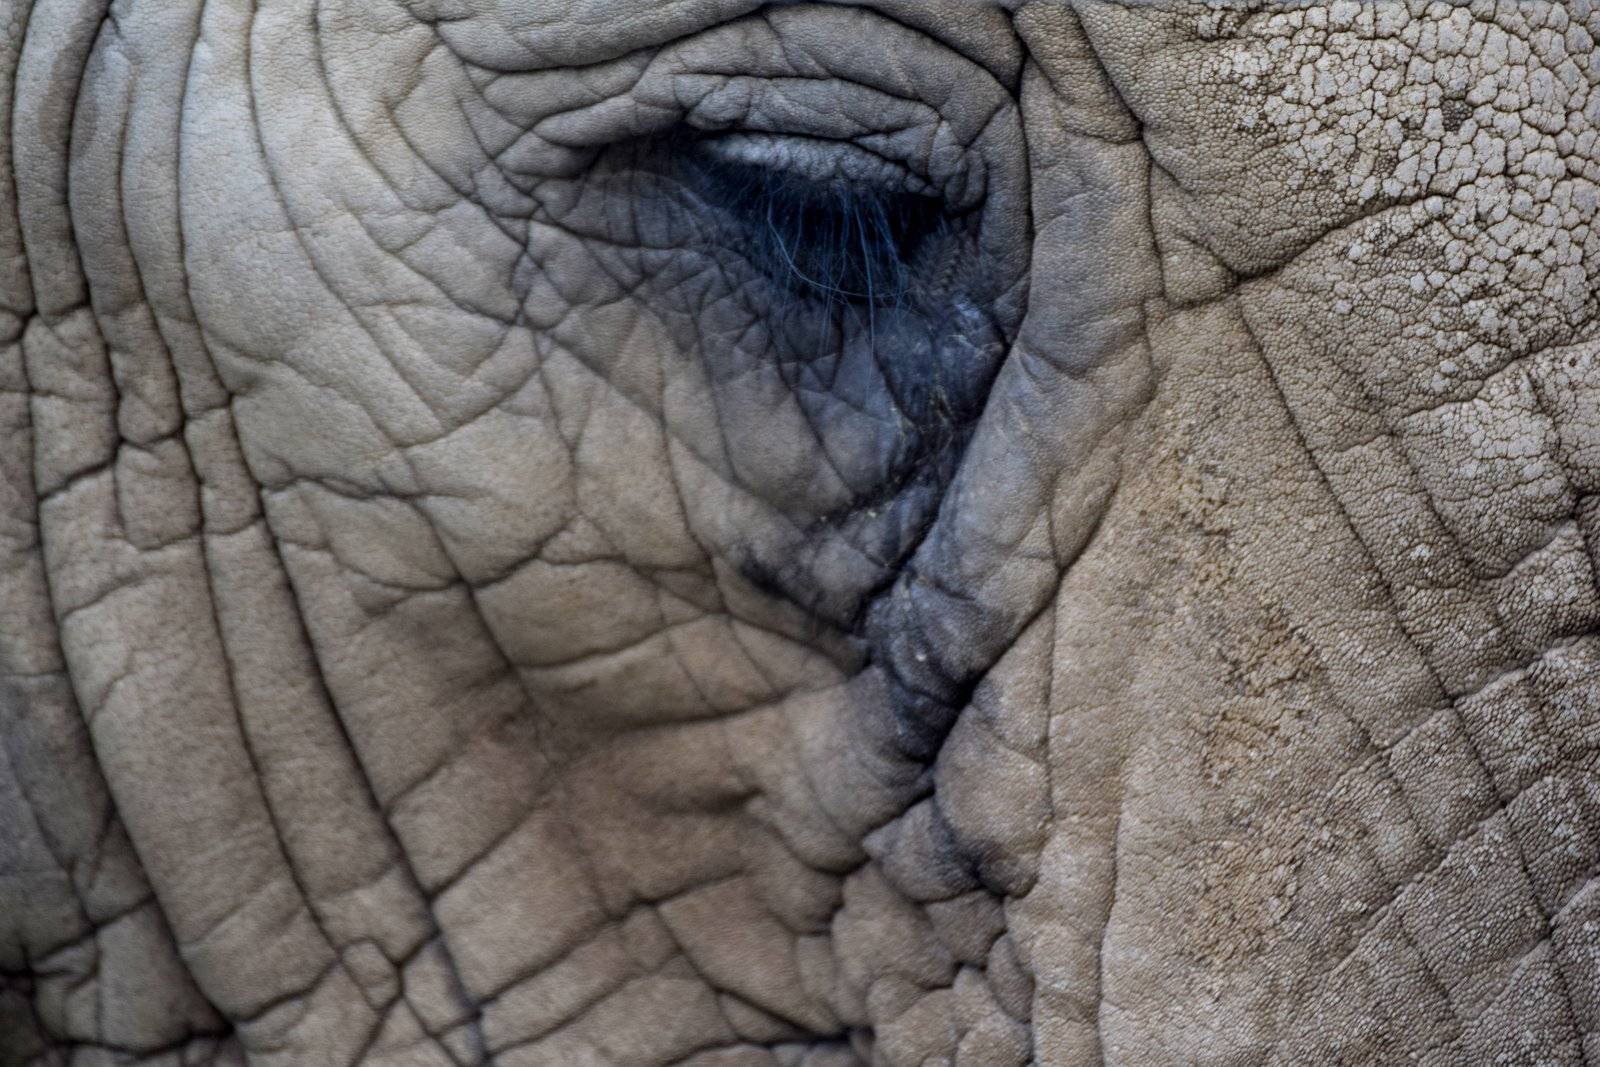 Elephant tears leave tracks